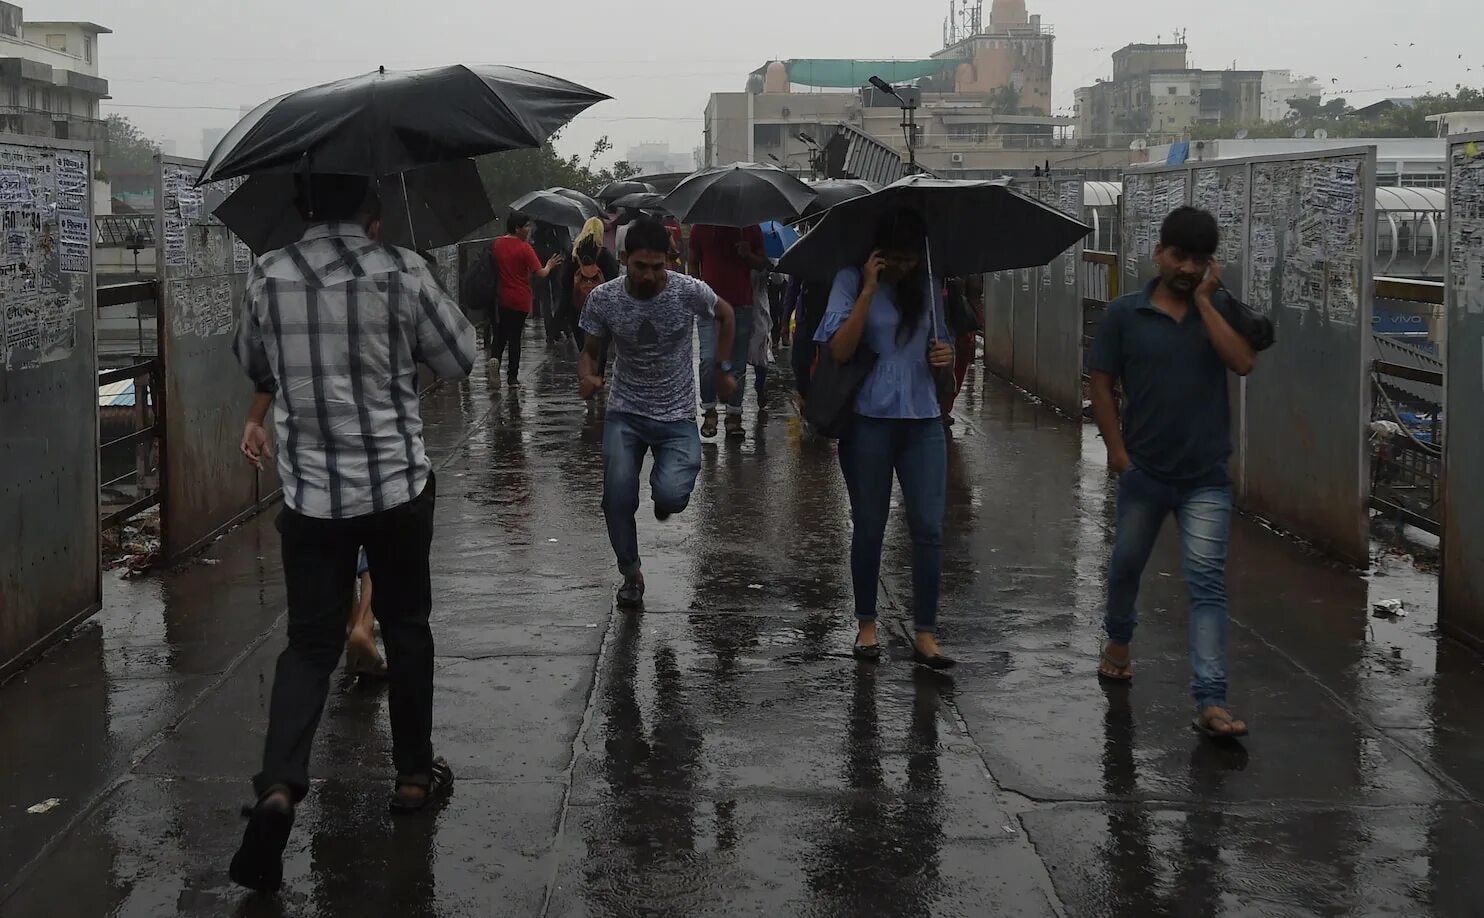 During rain. Температура в Индии сейчас. Климат Индии. Погода в Индии. Индия Ченнай наводнение после дождей.